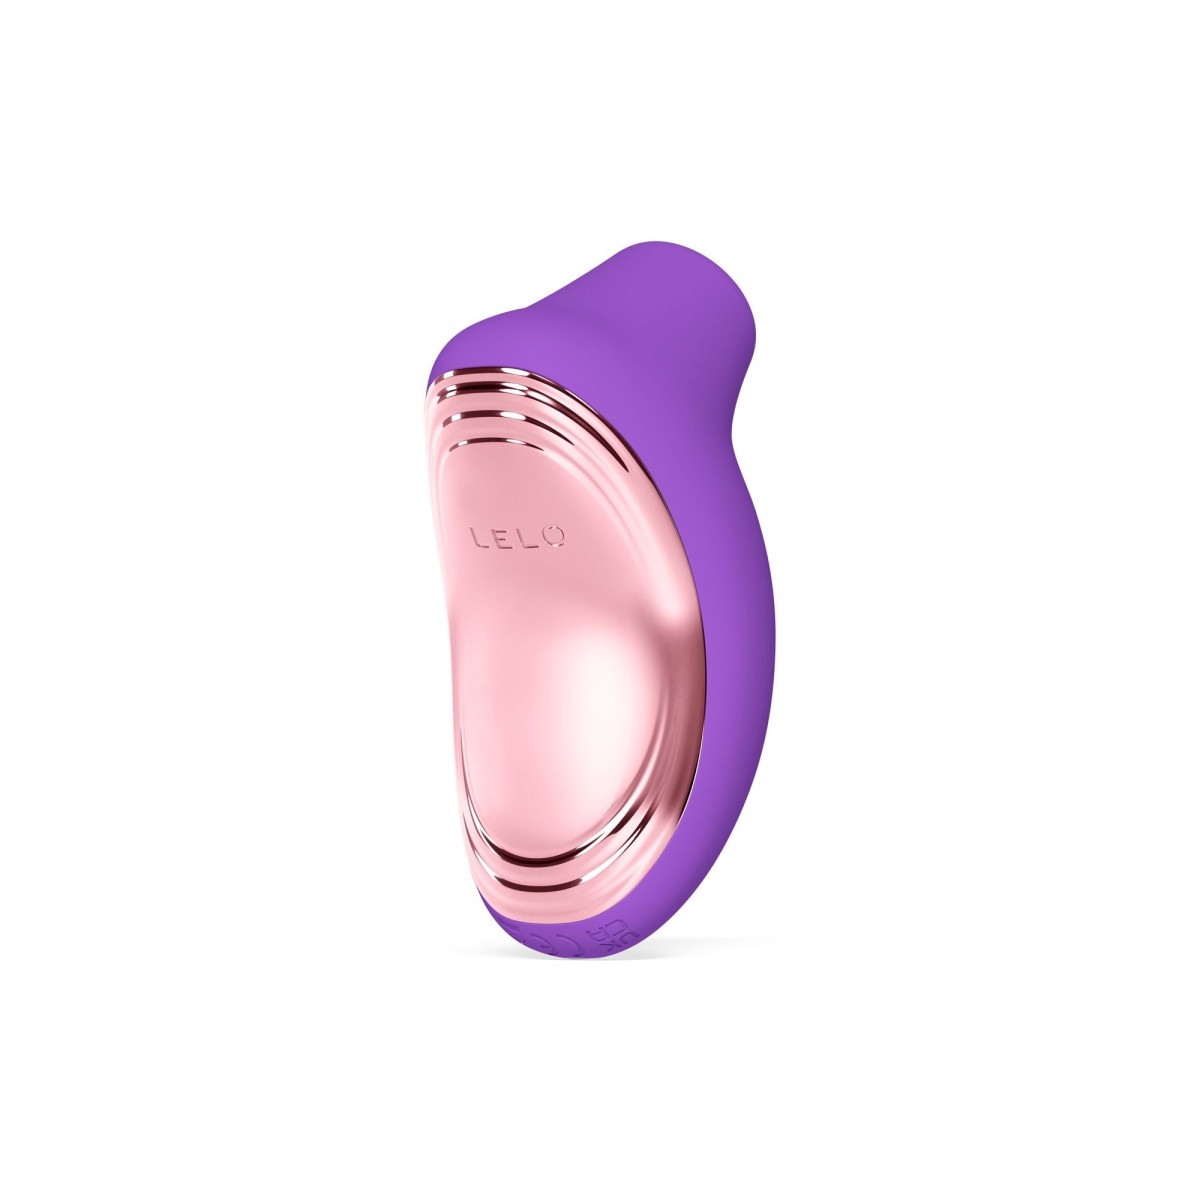 Stimulátor klitorisu LELO Sona 2 Travel Purple, luxusní sonický stimulátor klitorisu